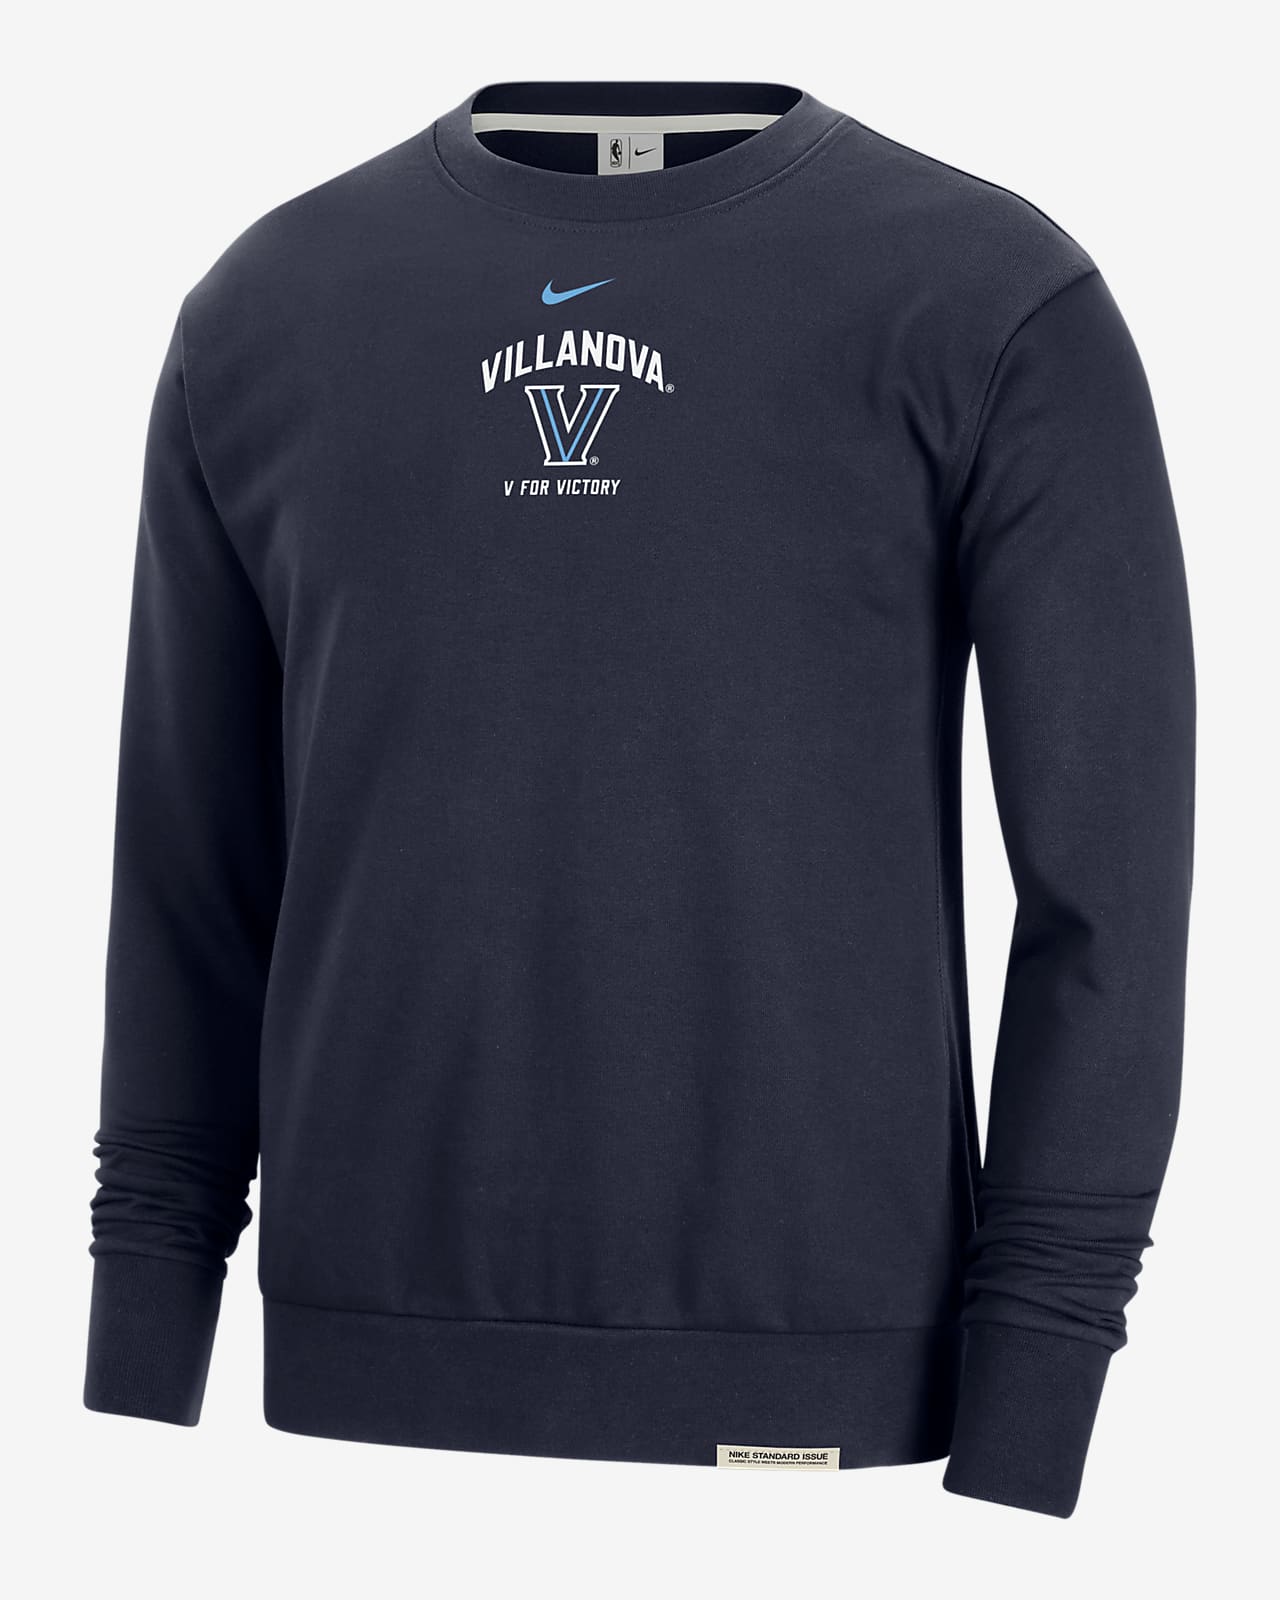 Villanova Standard Issue Men's Nike College Fleece Crew-Neck Sweatshirt